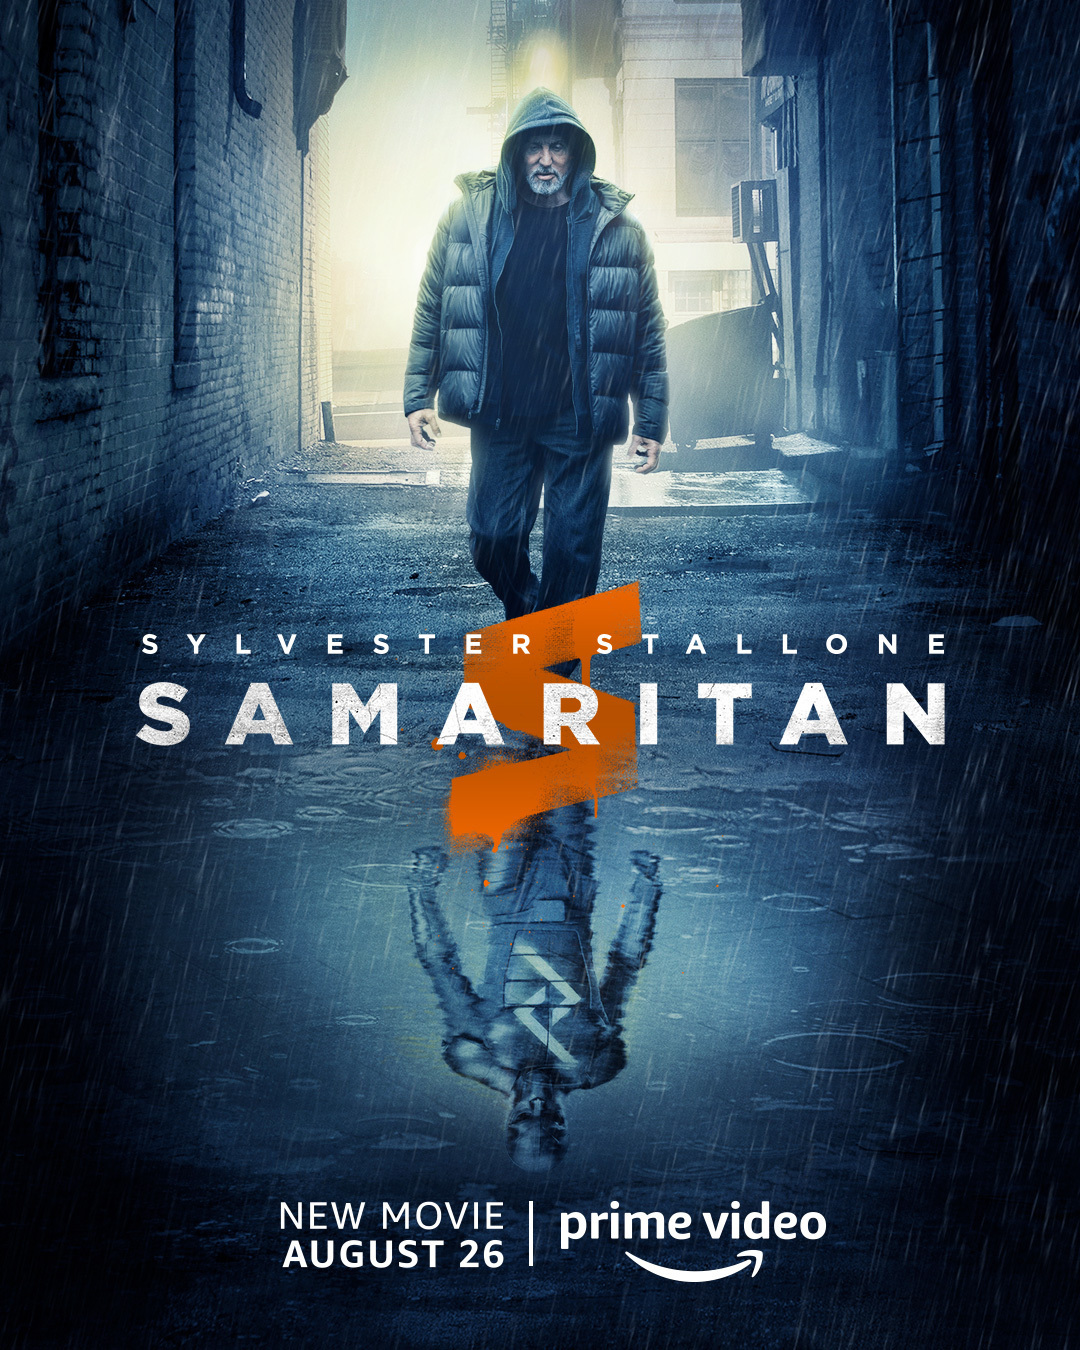 Póster de "Samaritan", la nueva película de Sylvester Stallone para Prime Video